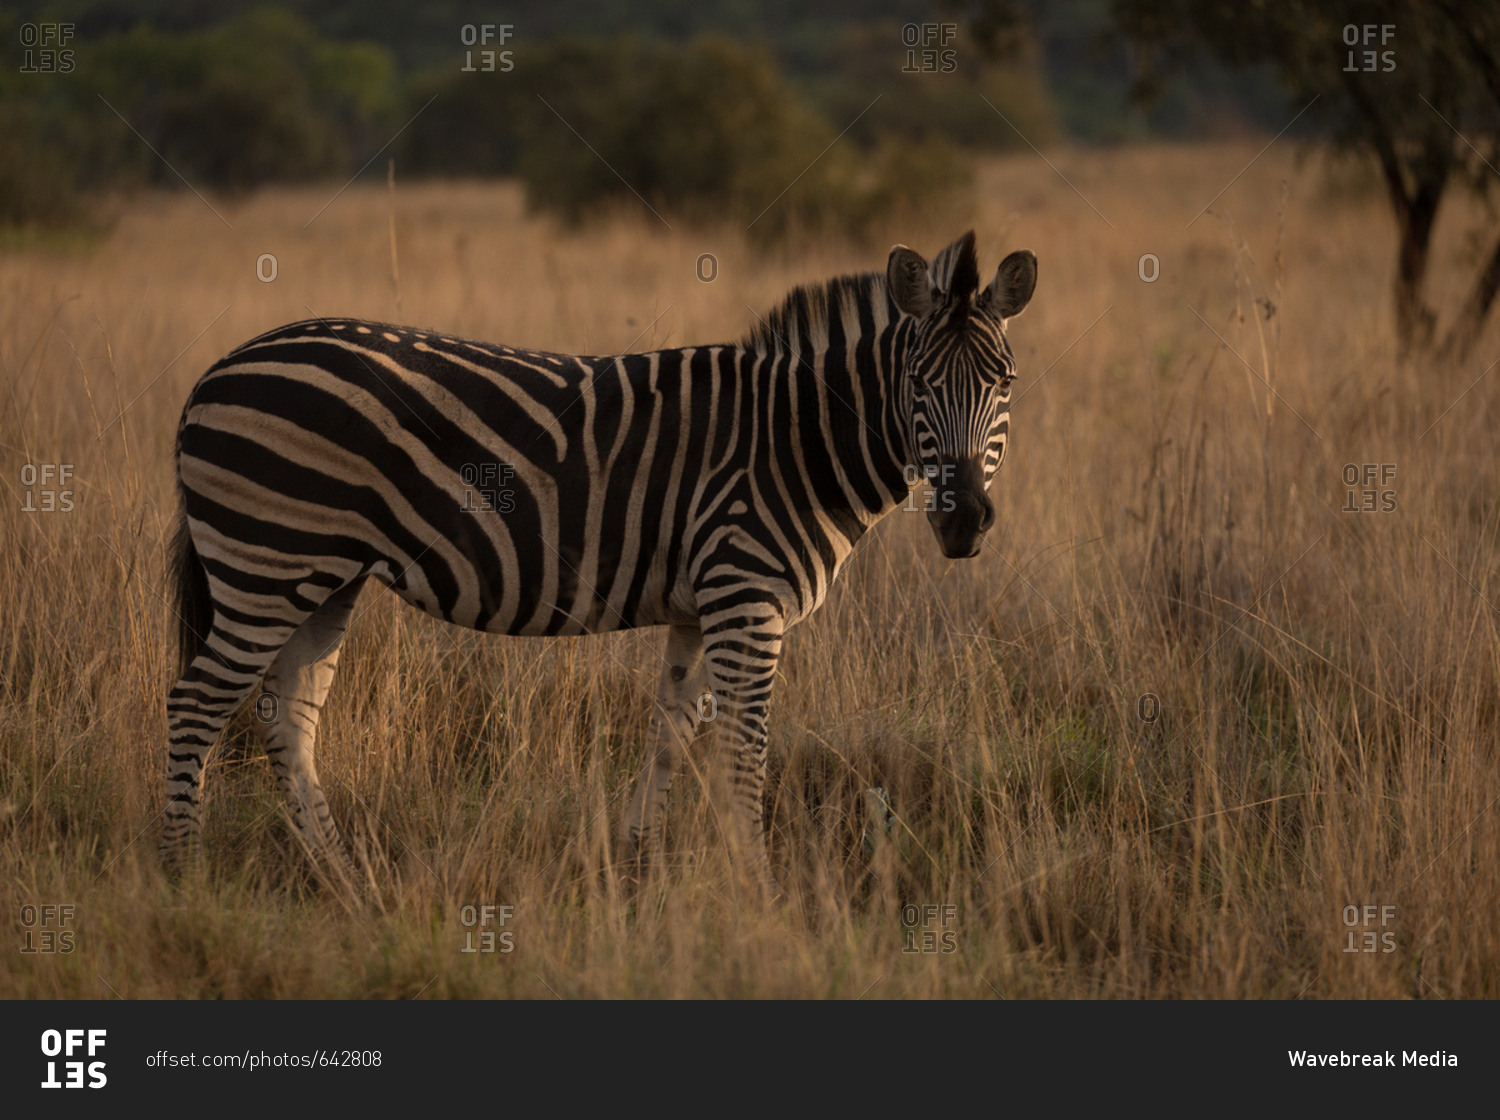 Zebra standing in the savannah at safari park